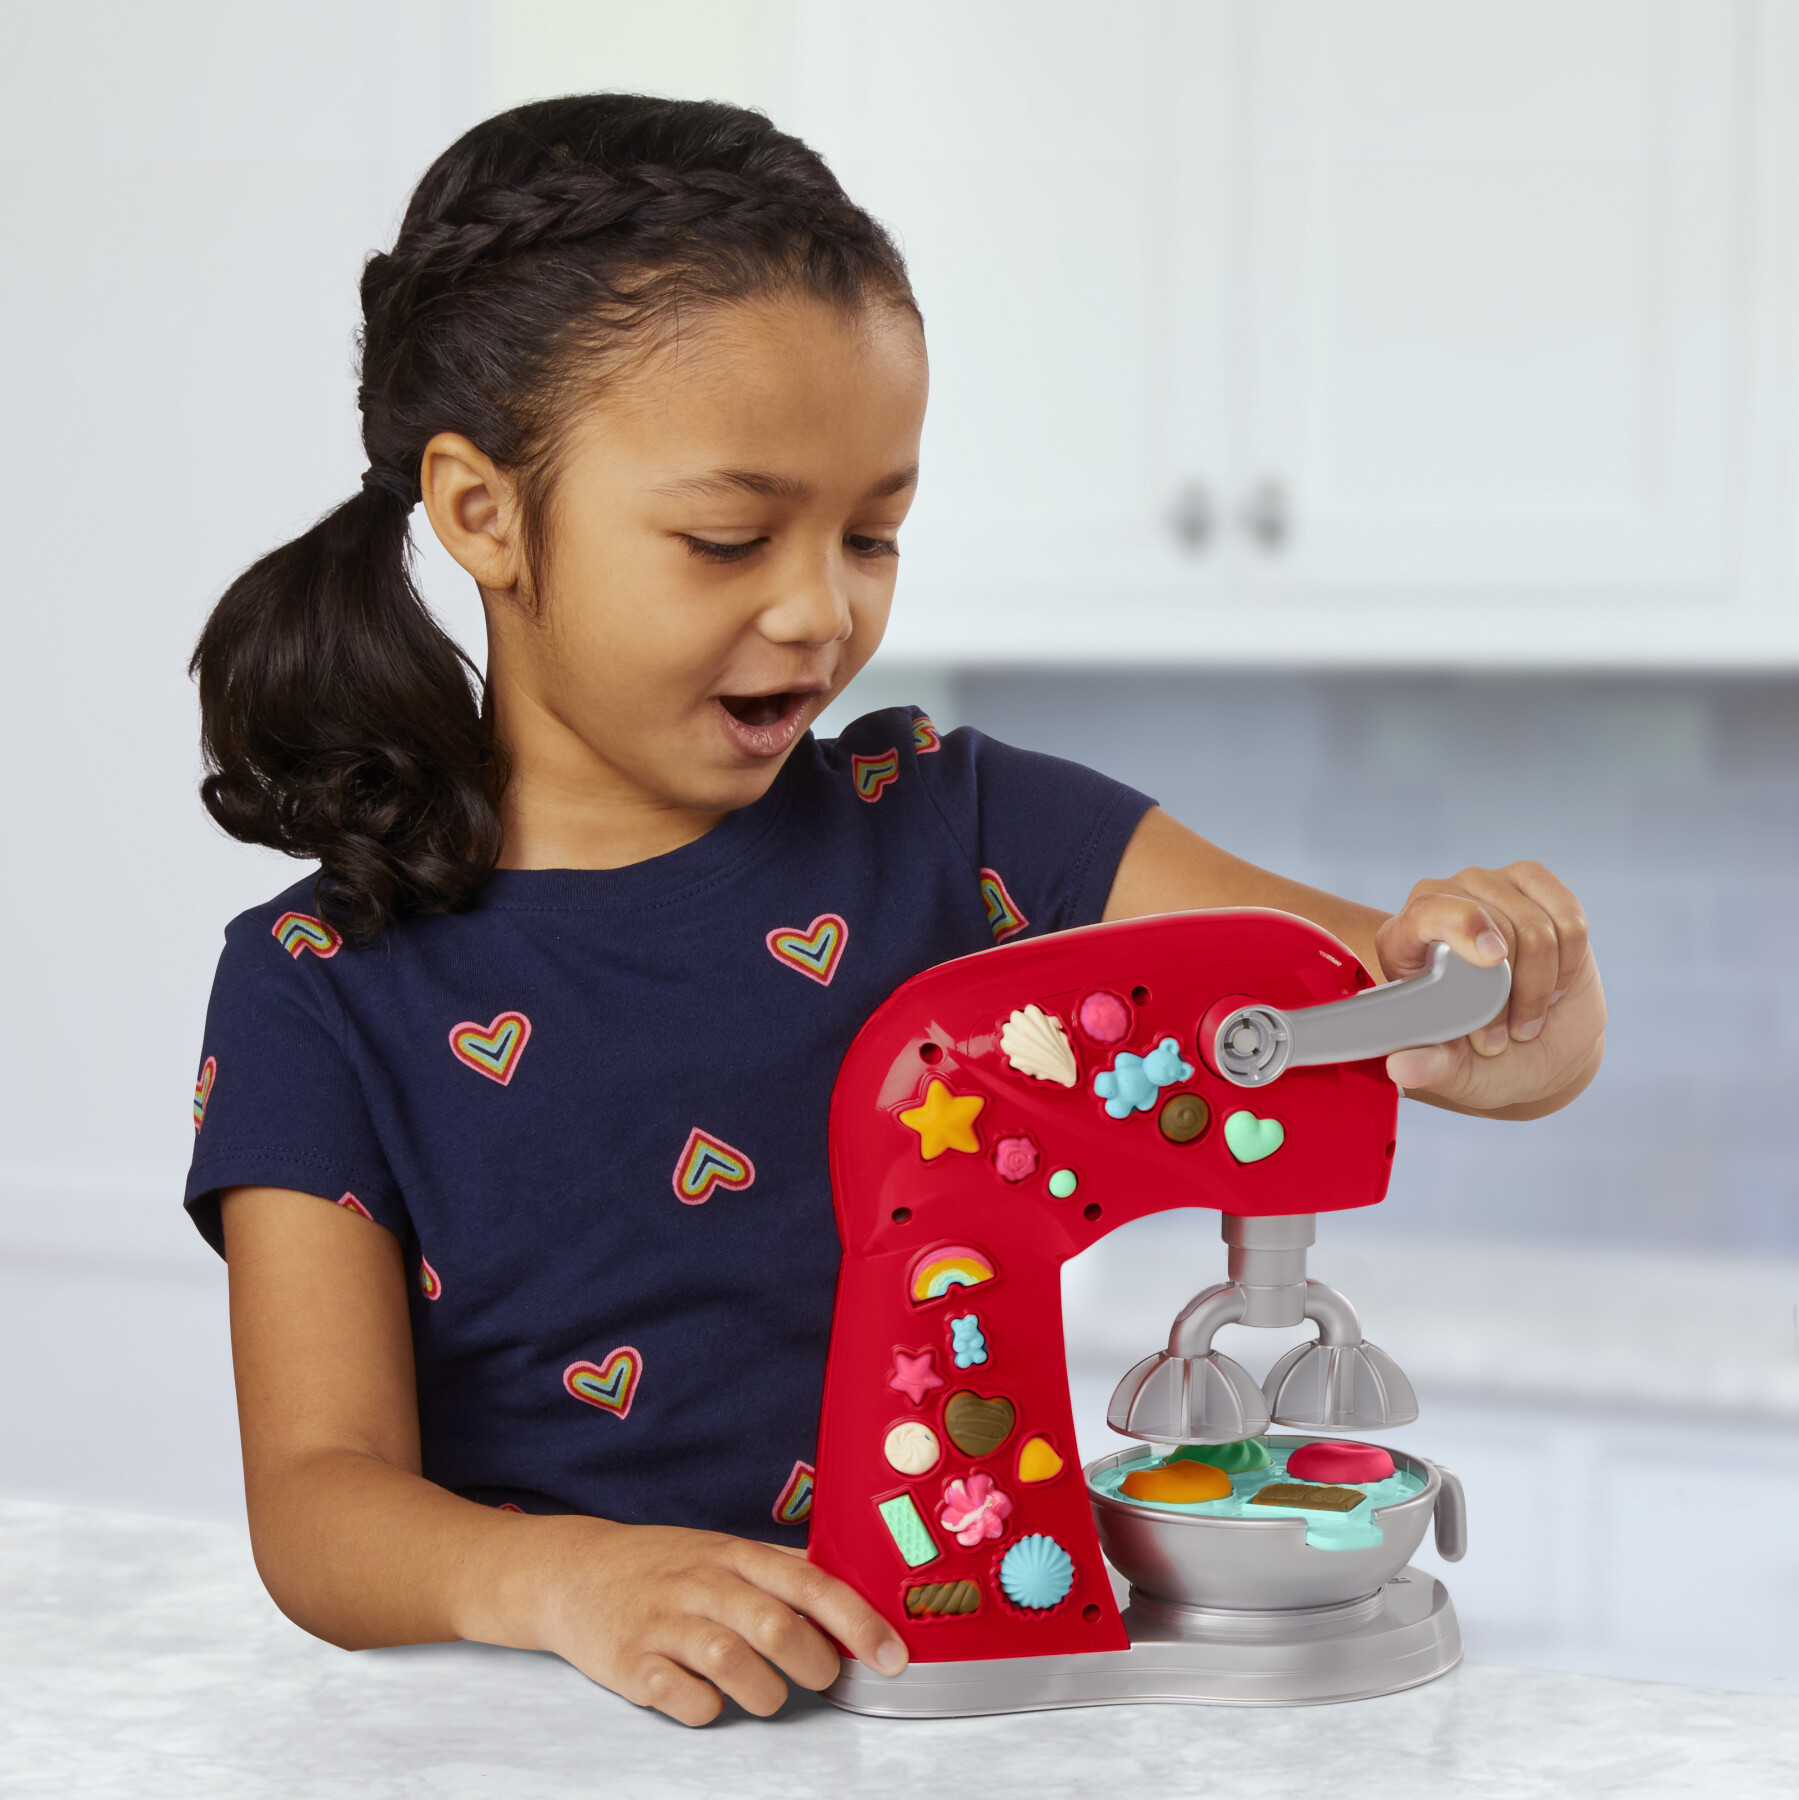 Play-doh kitchen creations - il magico mixer, impastatrice giocattolo con finti accessori da cucina - PLAY-DOH